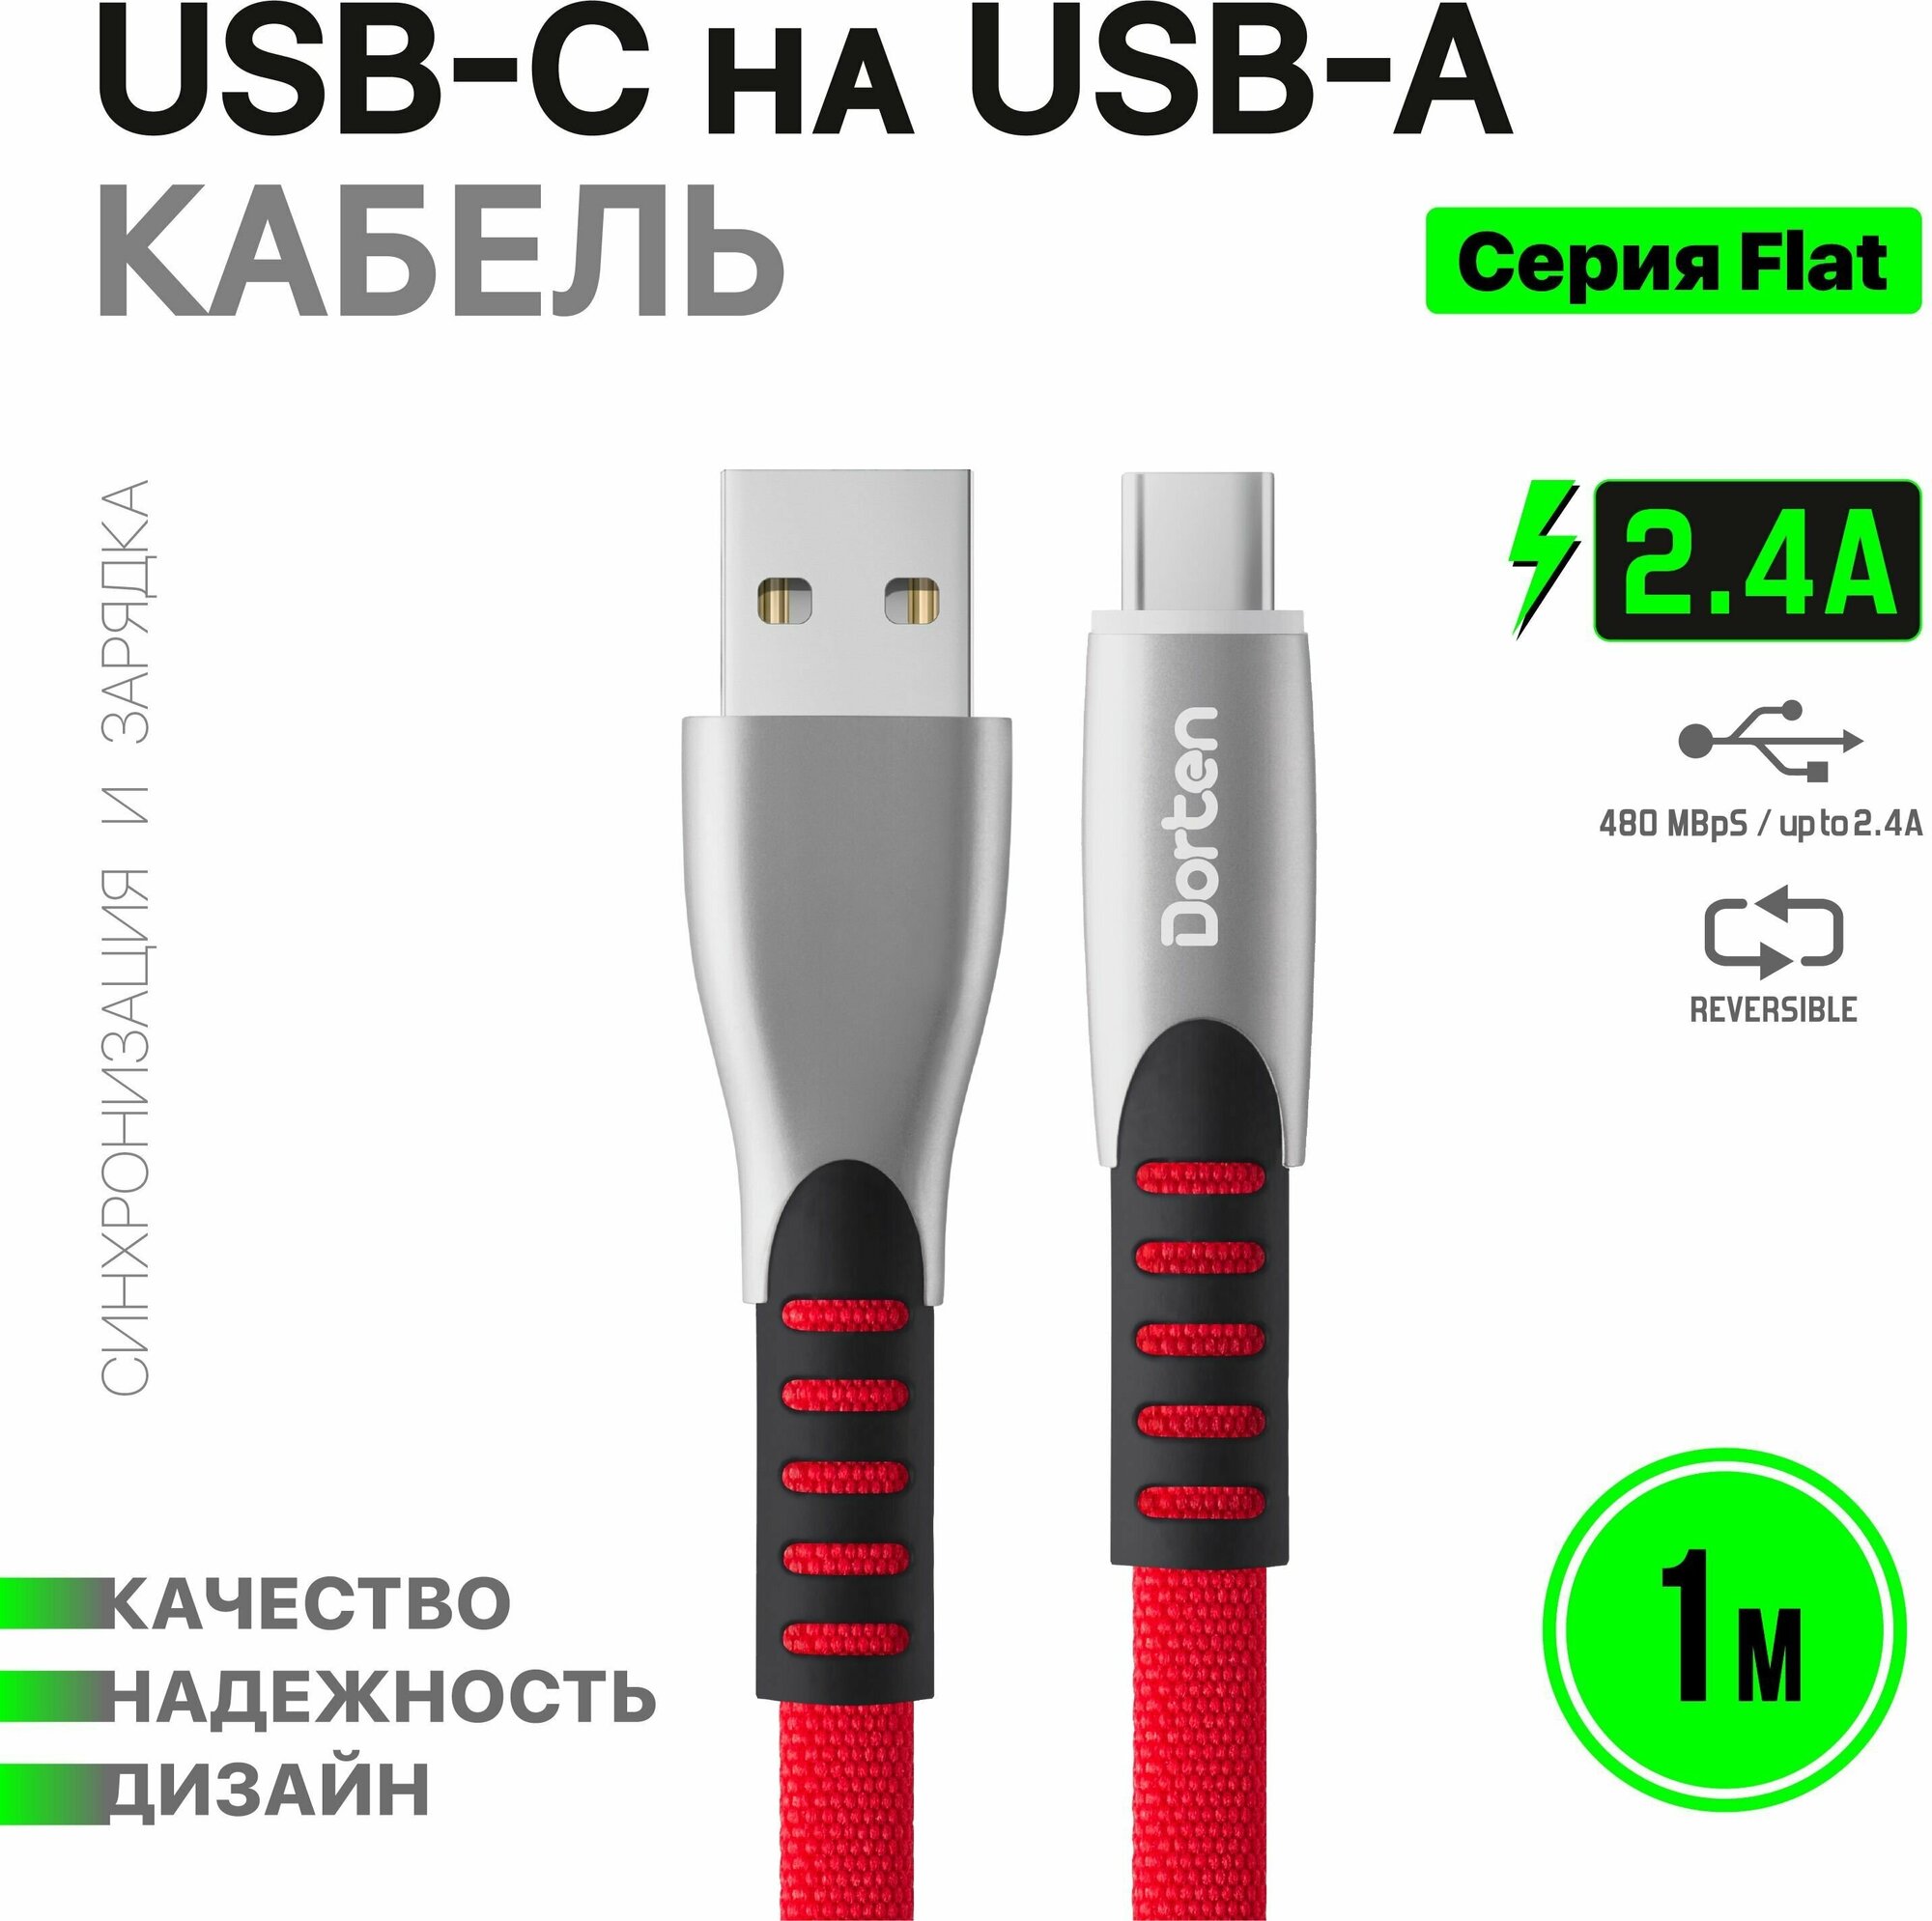 Кабель USB-C для зарядки телефона 1 метр: Flat series провод юсб 1м - Красный